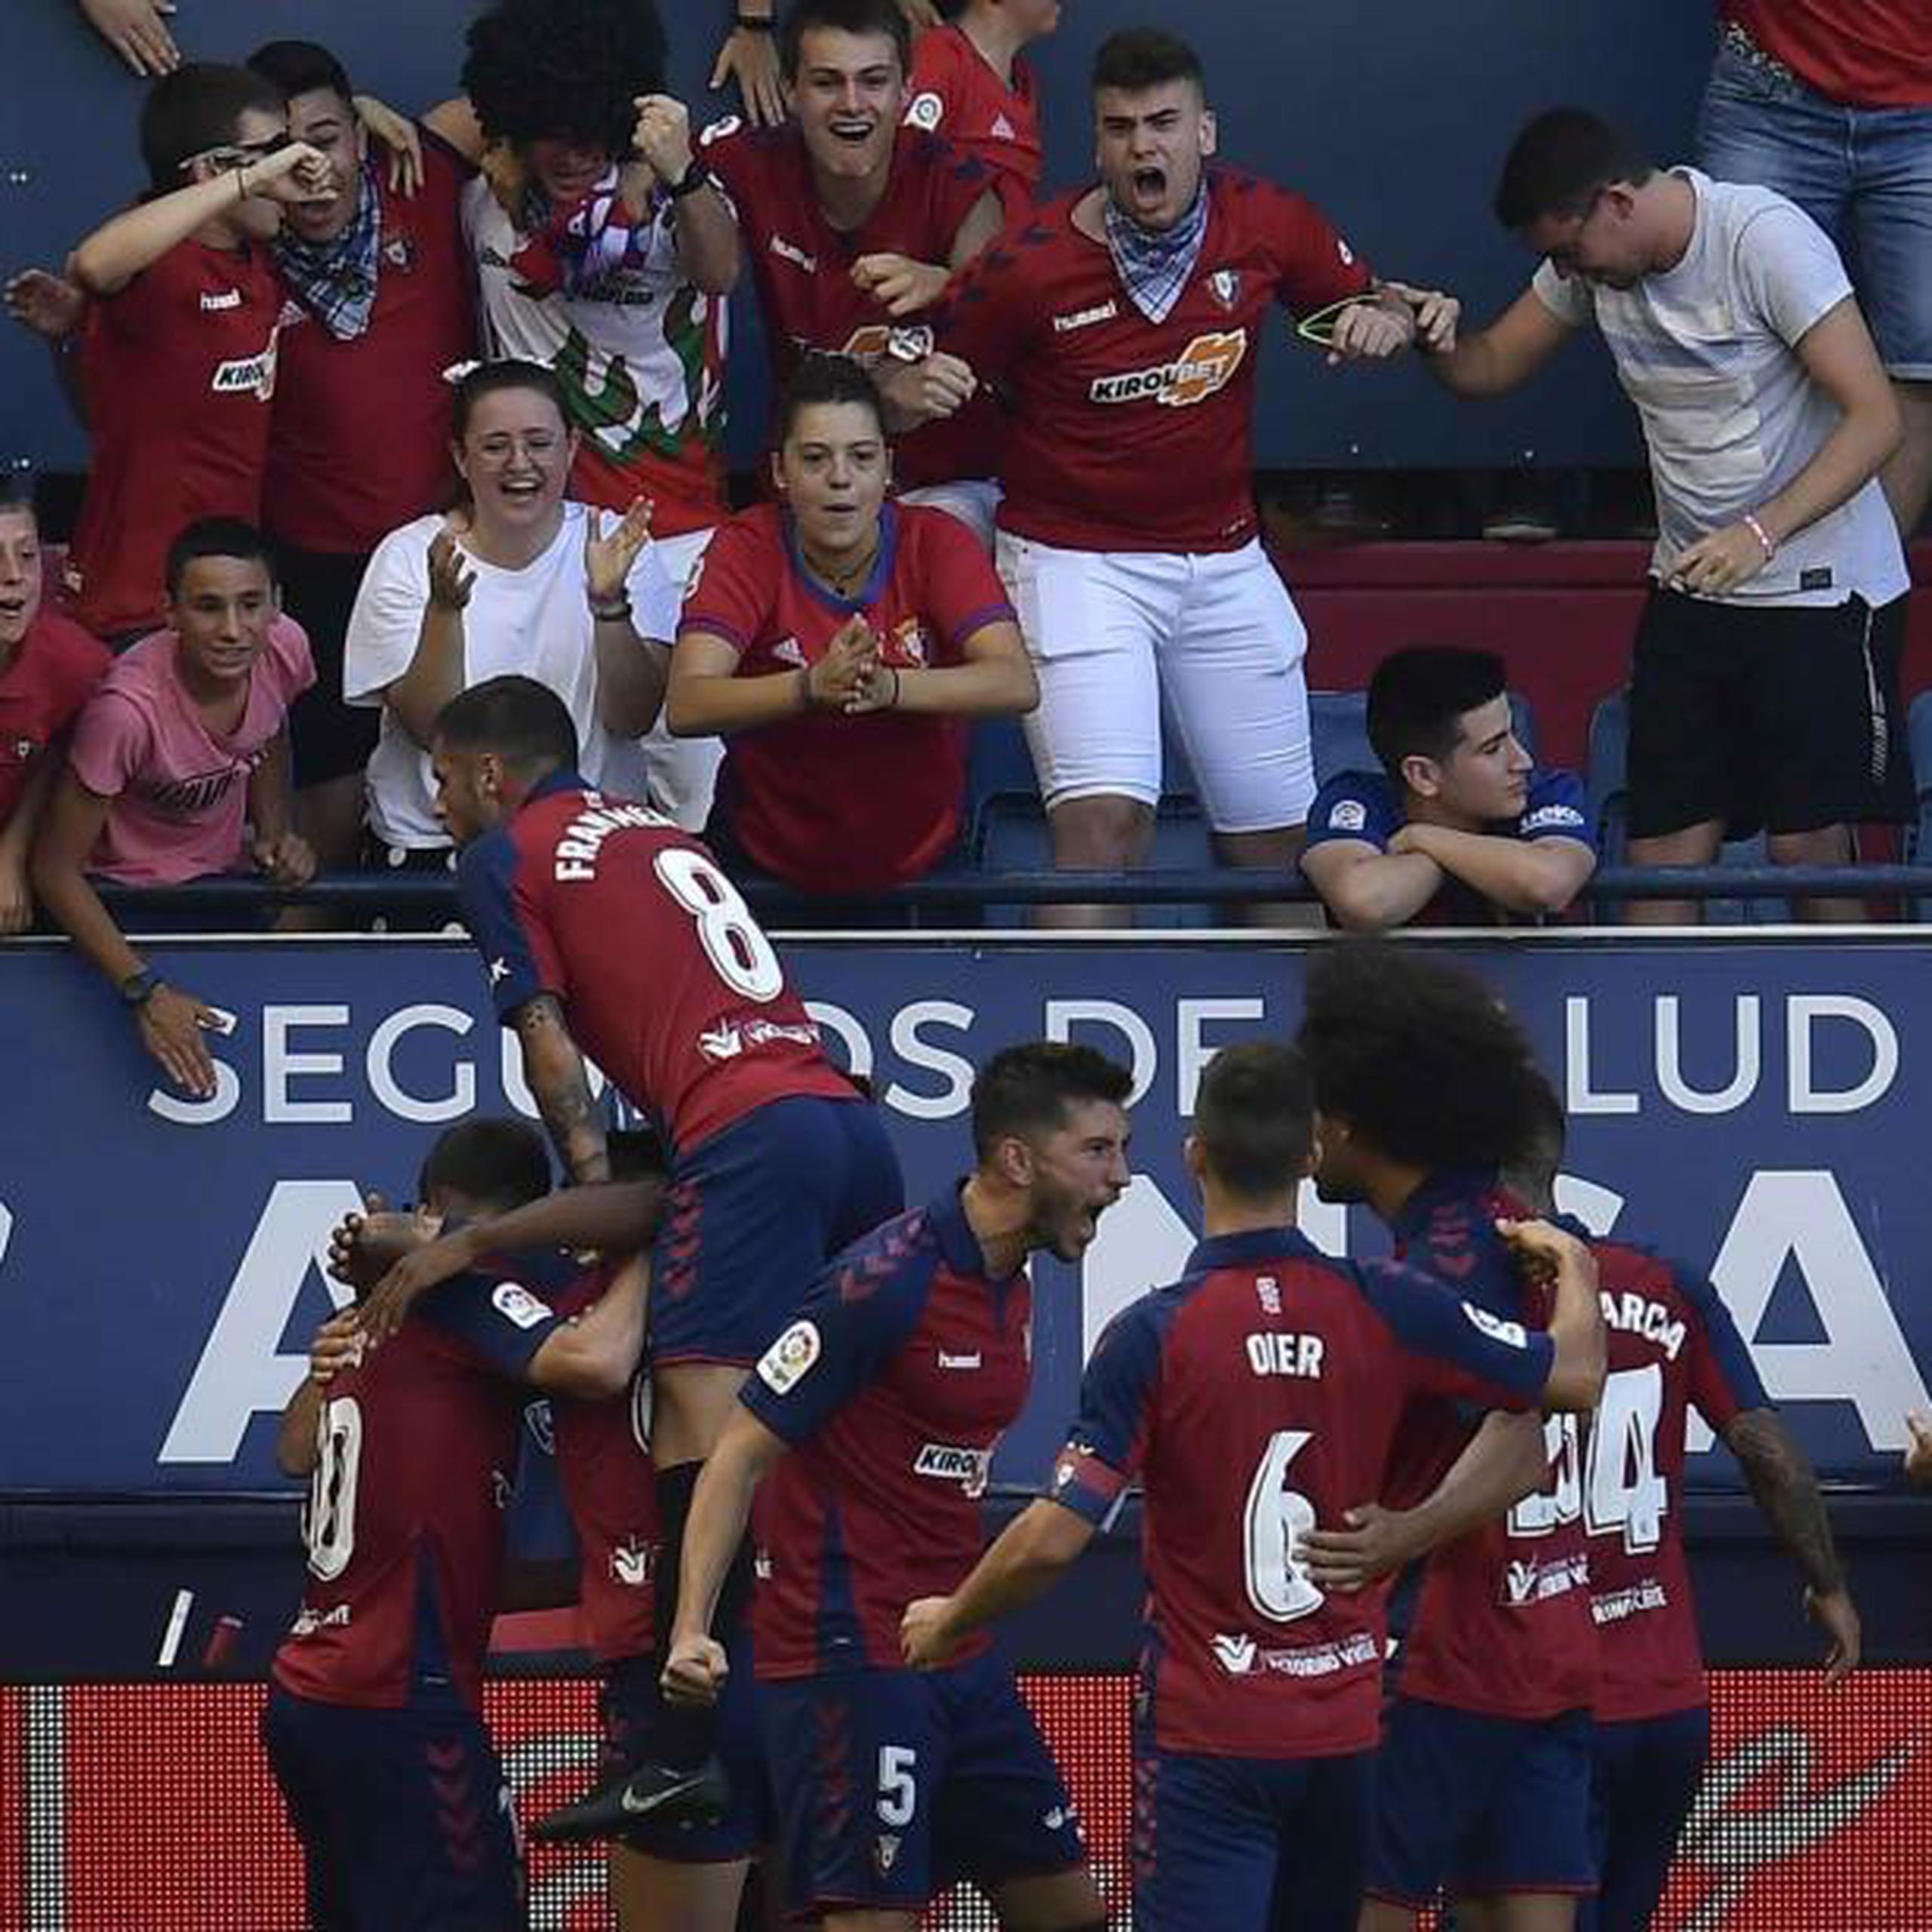 Jugadores y fanáticos de Osasuna celebran un gol. (AP / Alvaro Barrientos)